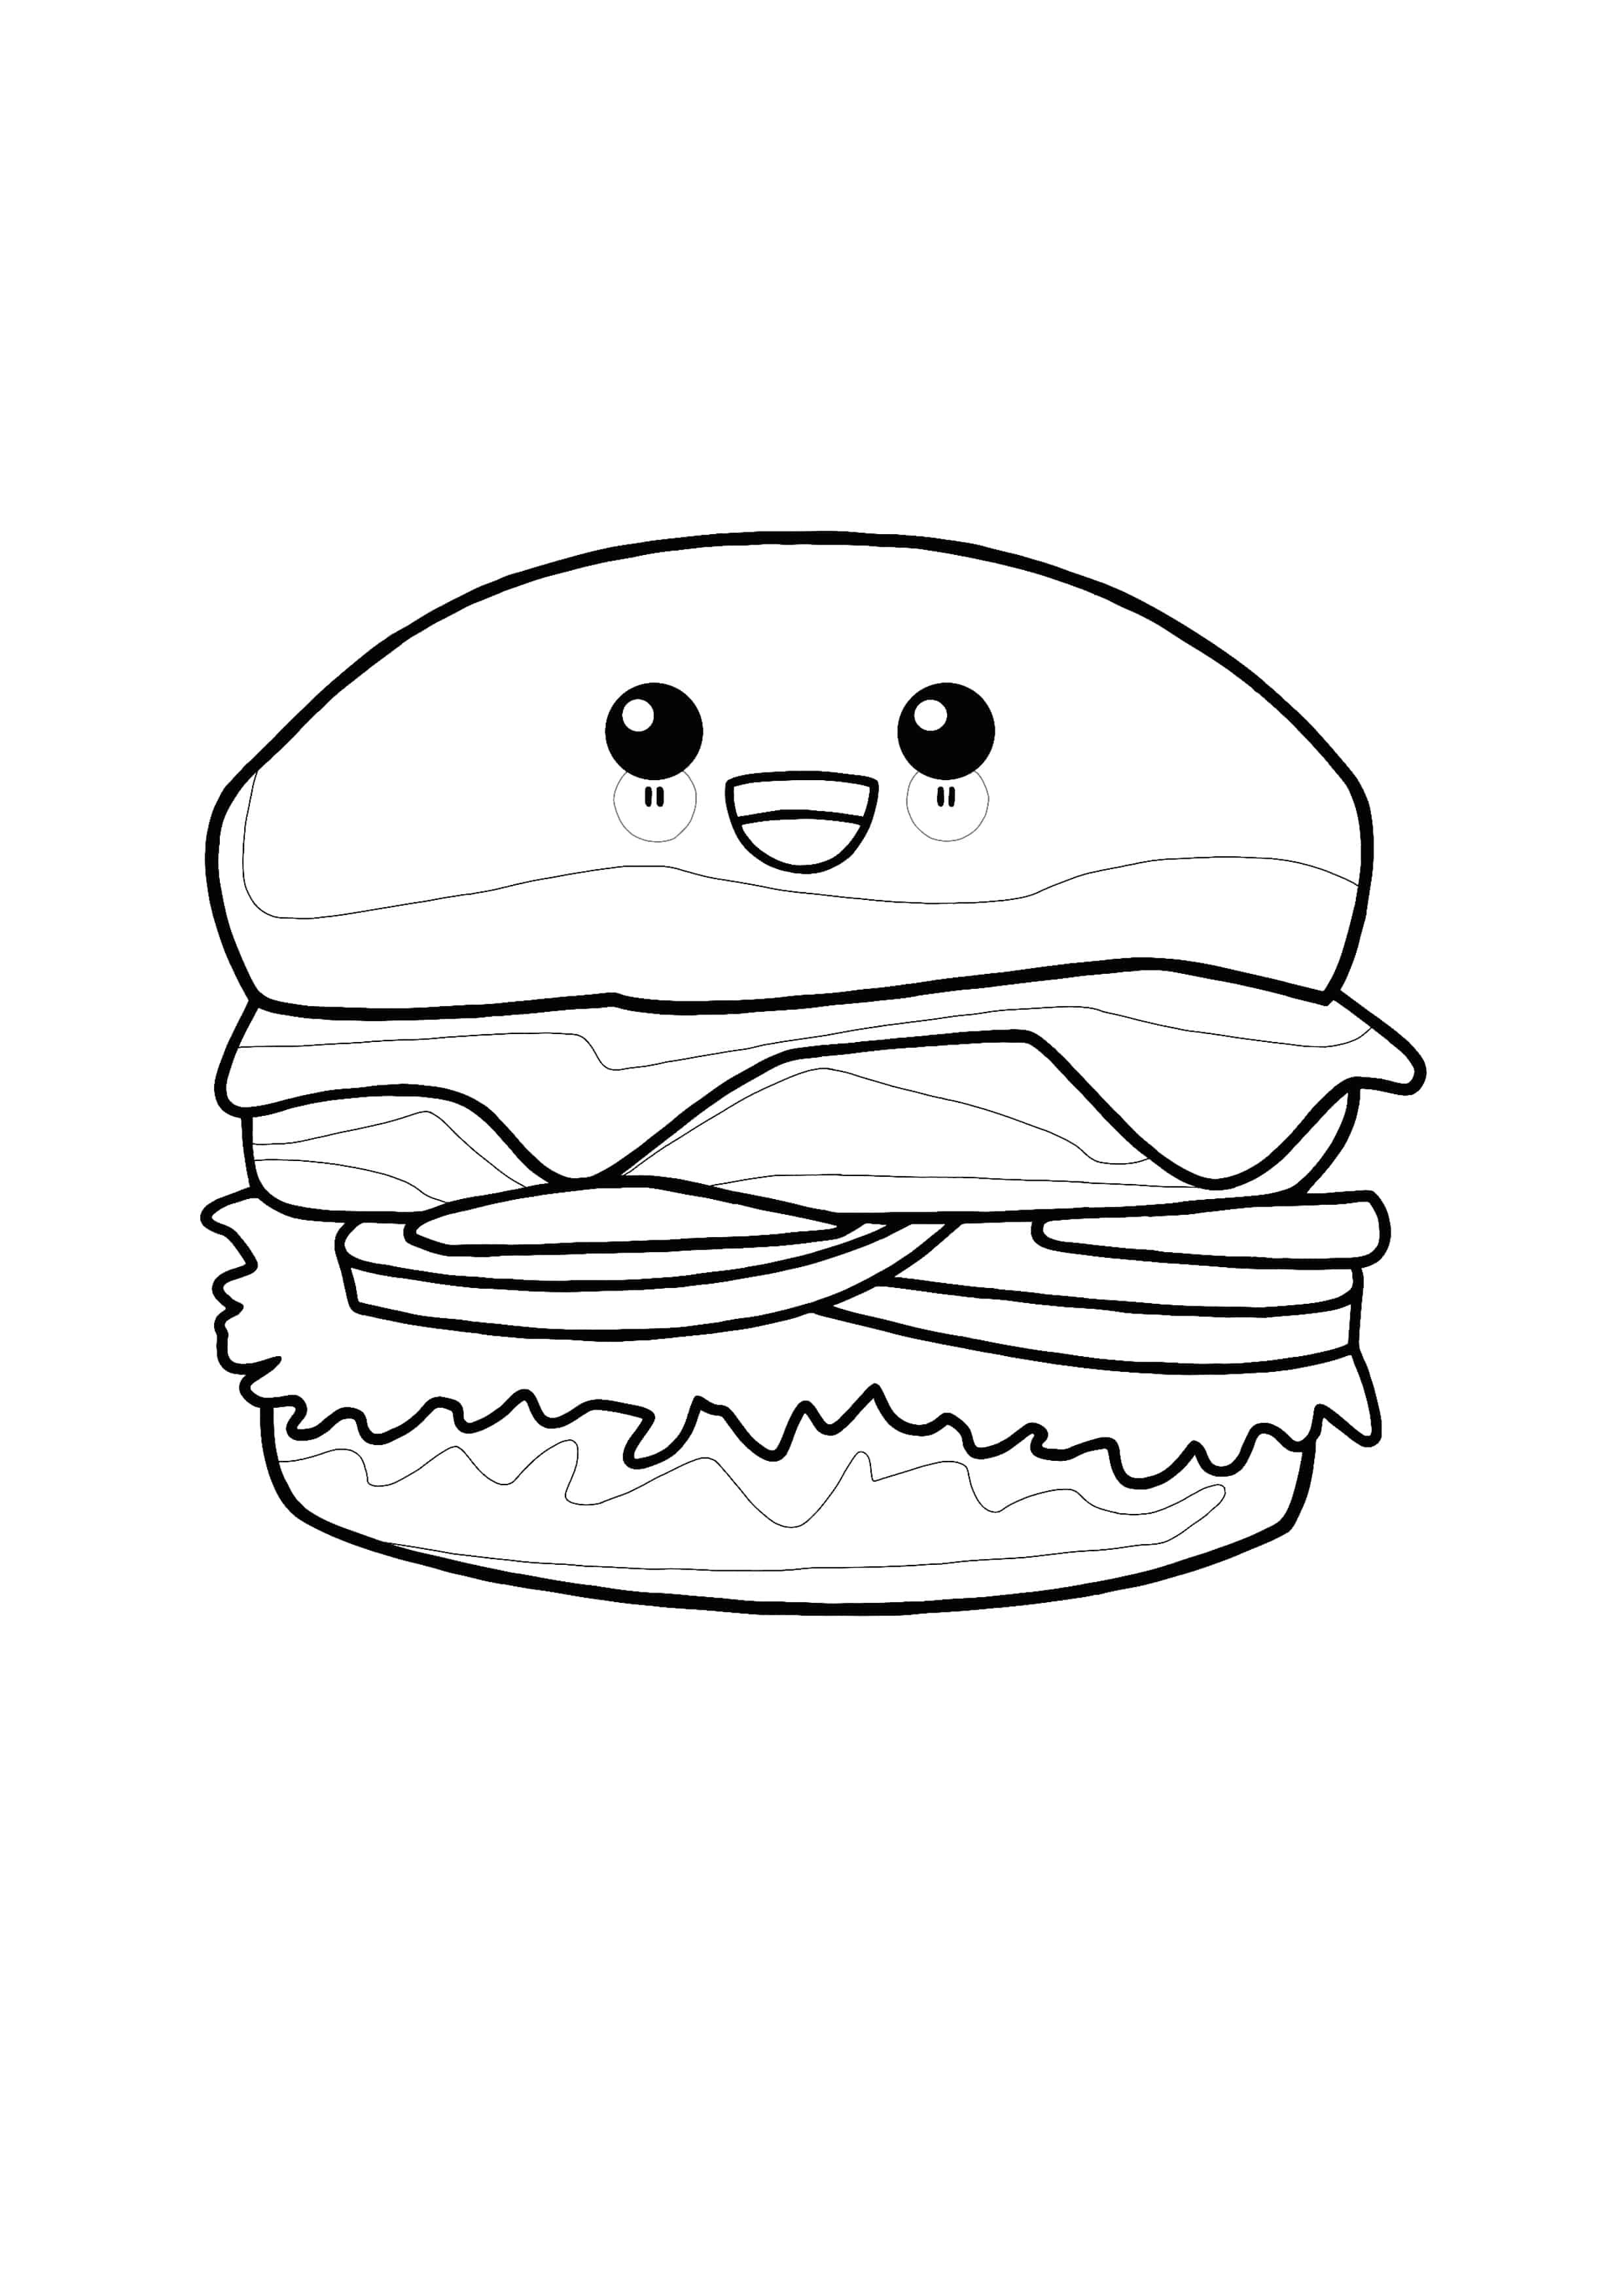 Kawaii hamburger coloring page coloring pages free coloring pages free printable coloring